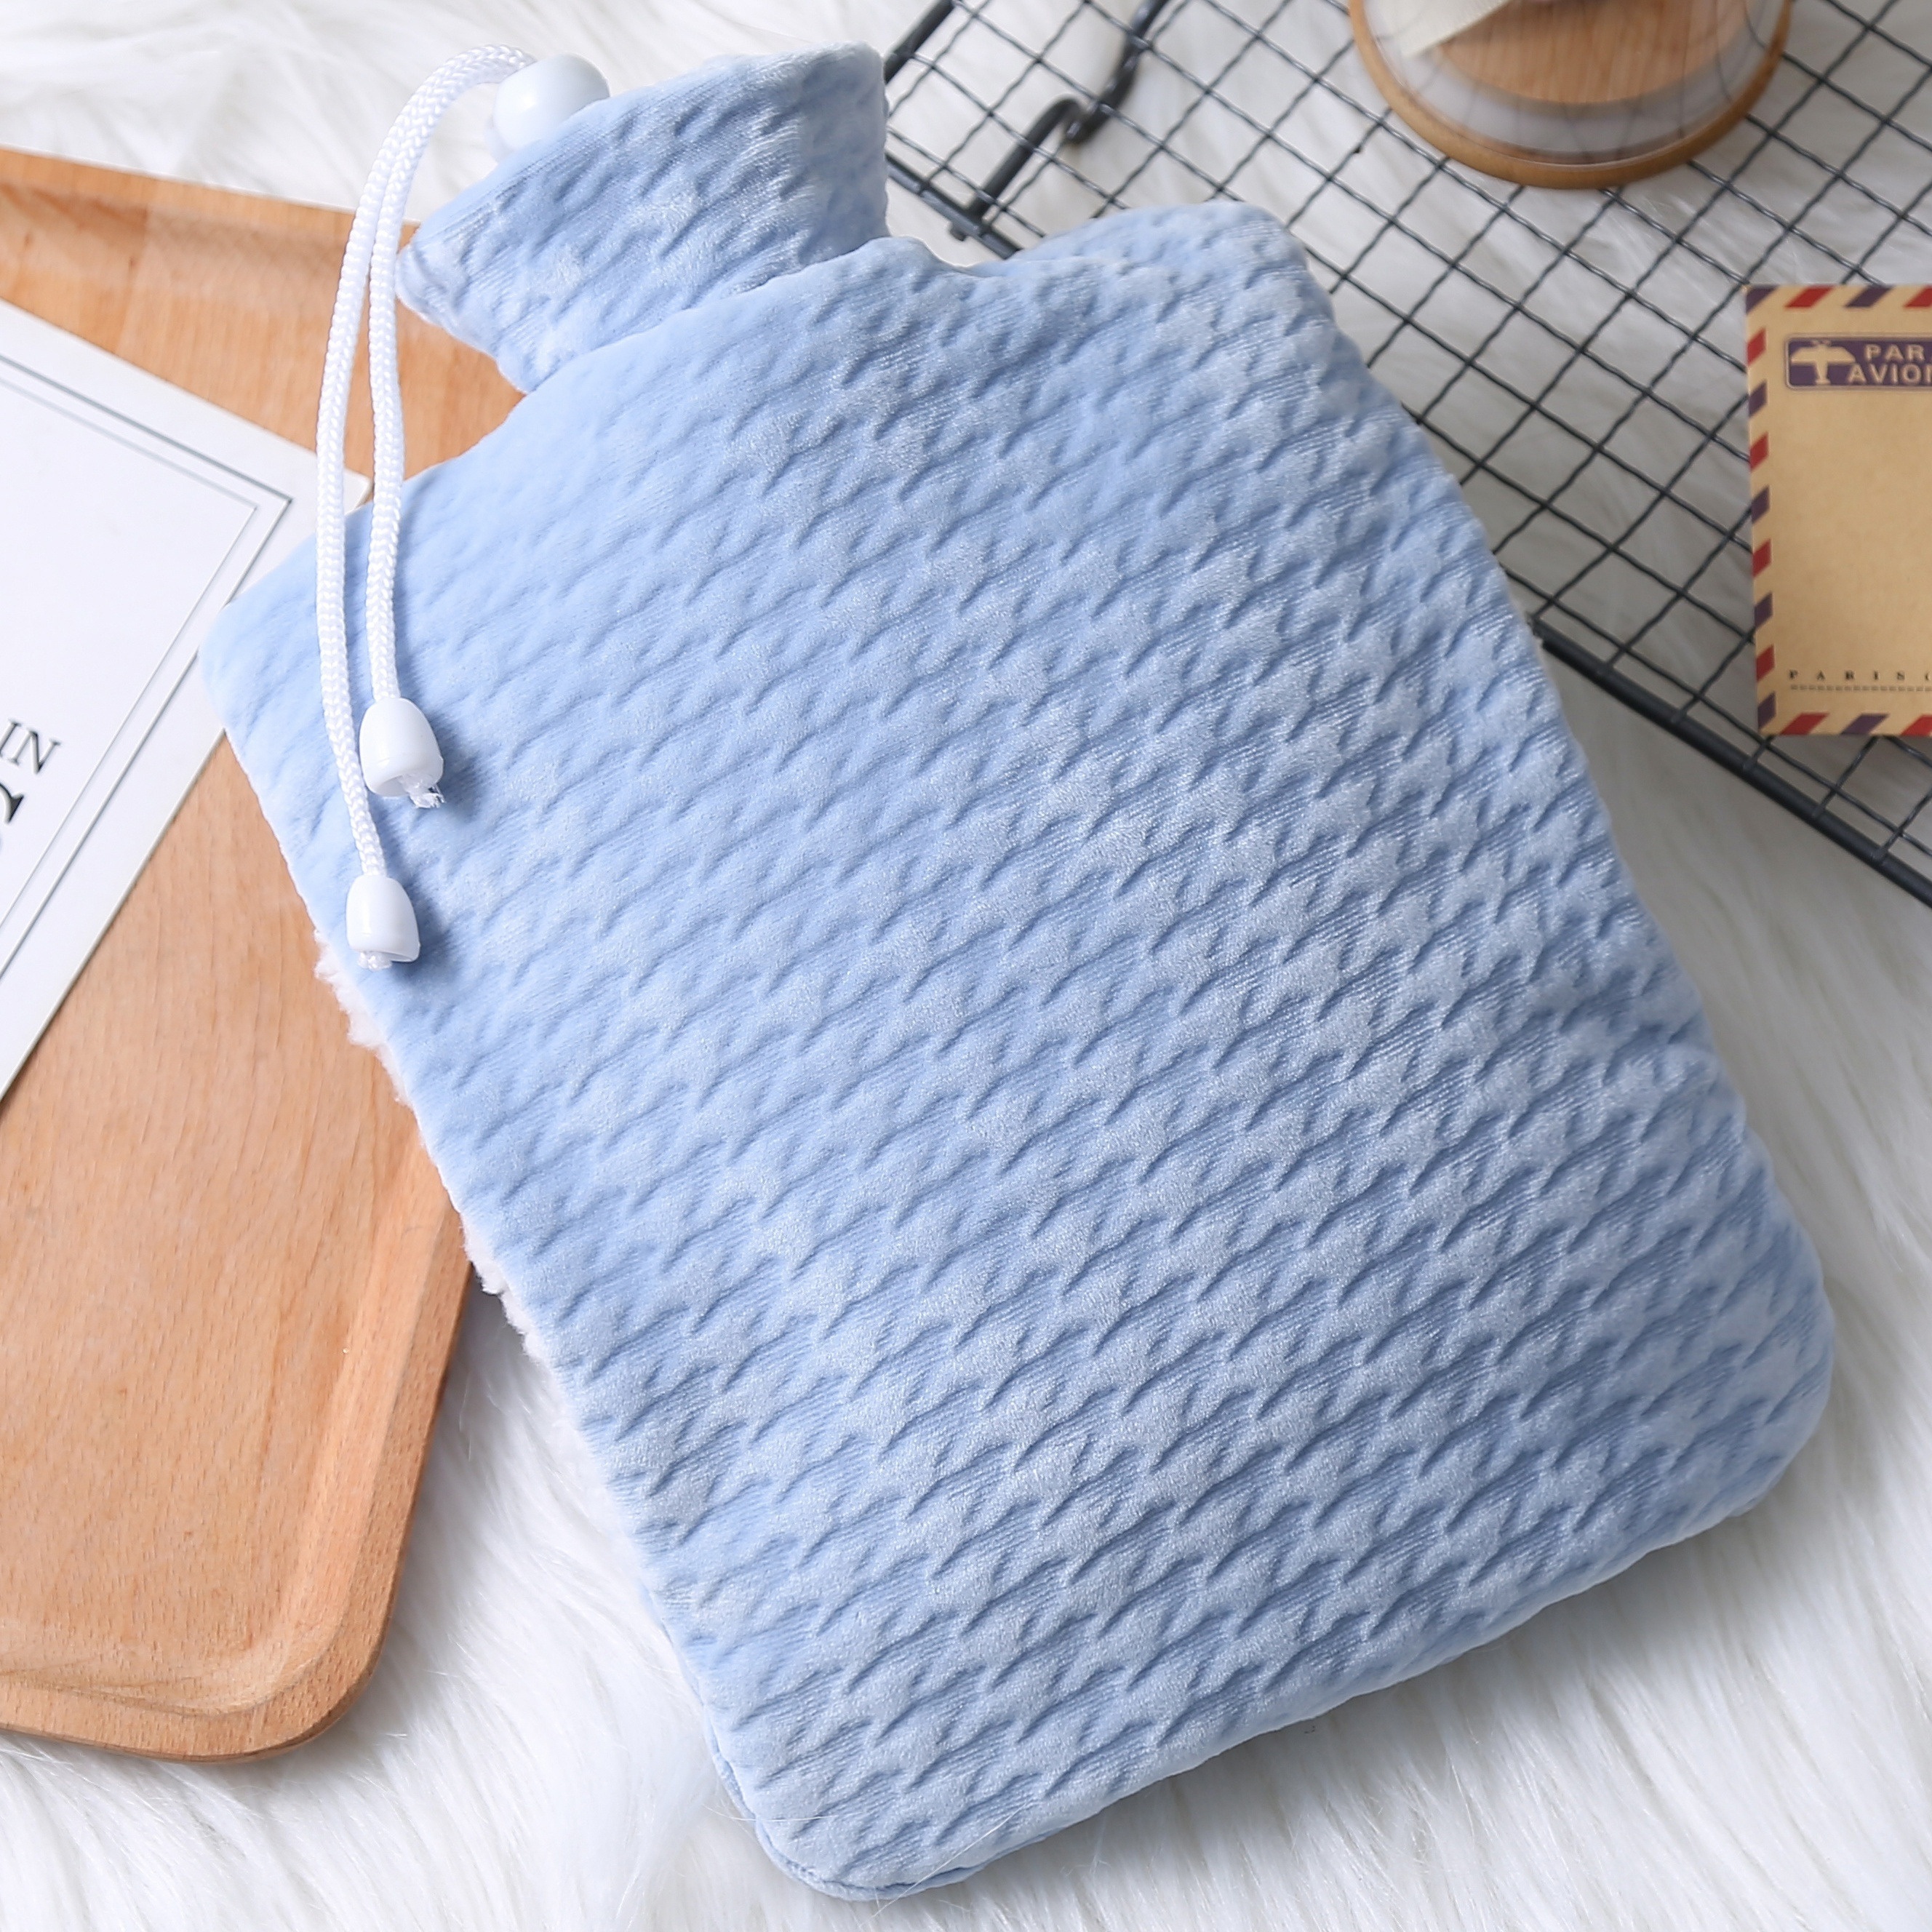 Botella de agua caliente eléctrica con tapa, almohadilla térmica, bolsa de  compresión cálida para calambres menstruales/menstruales, cuello, espalda